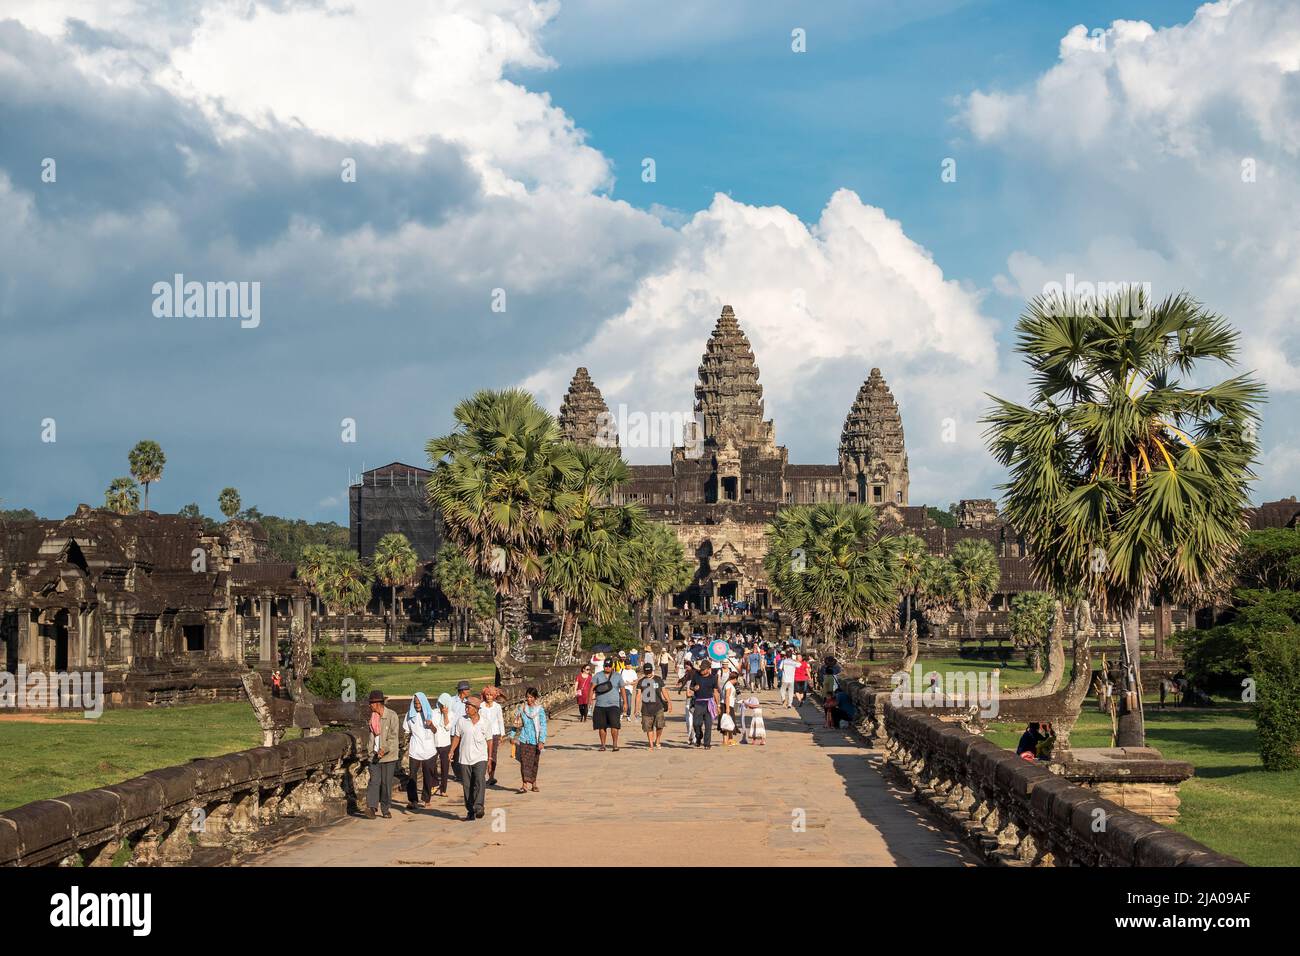 Tourists visiting the ancient ruins at Angkor Wat near Siem Reap, Cambodia. Stock Photo